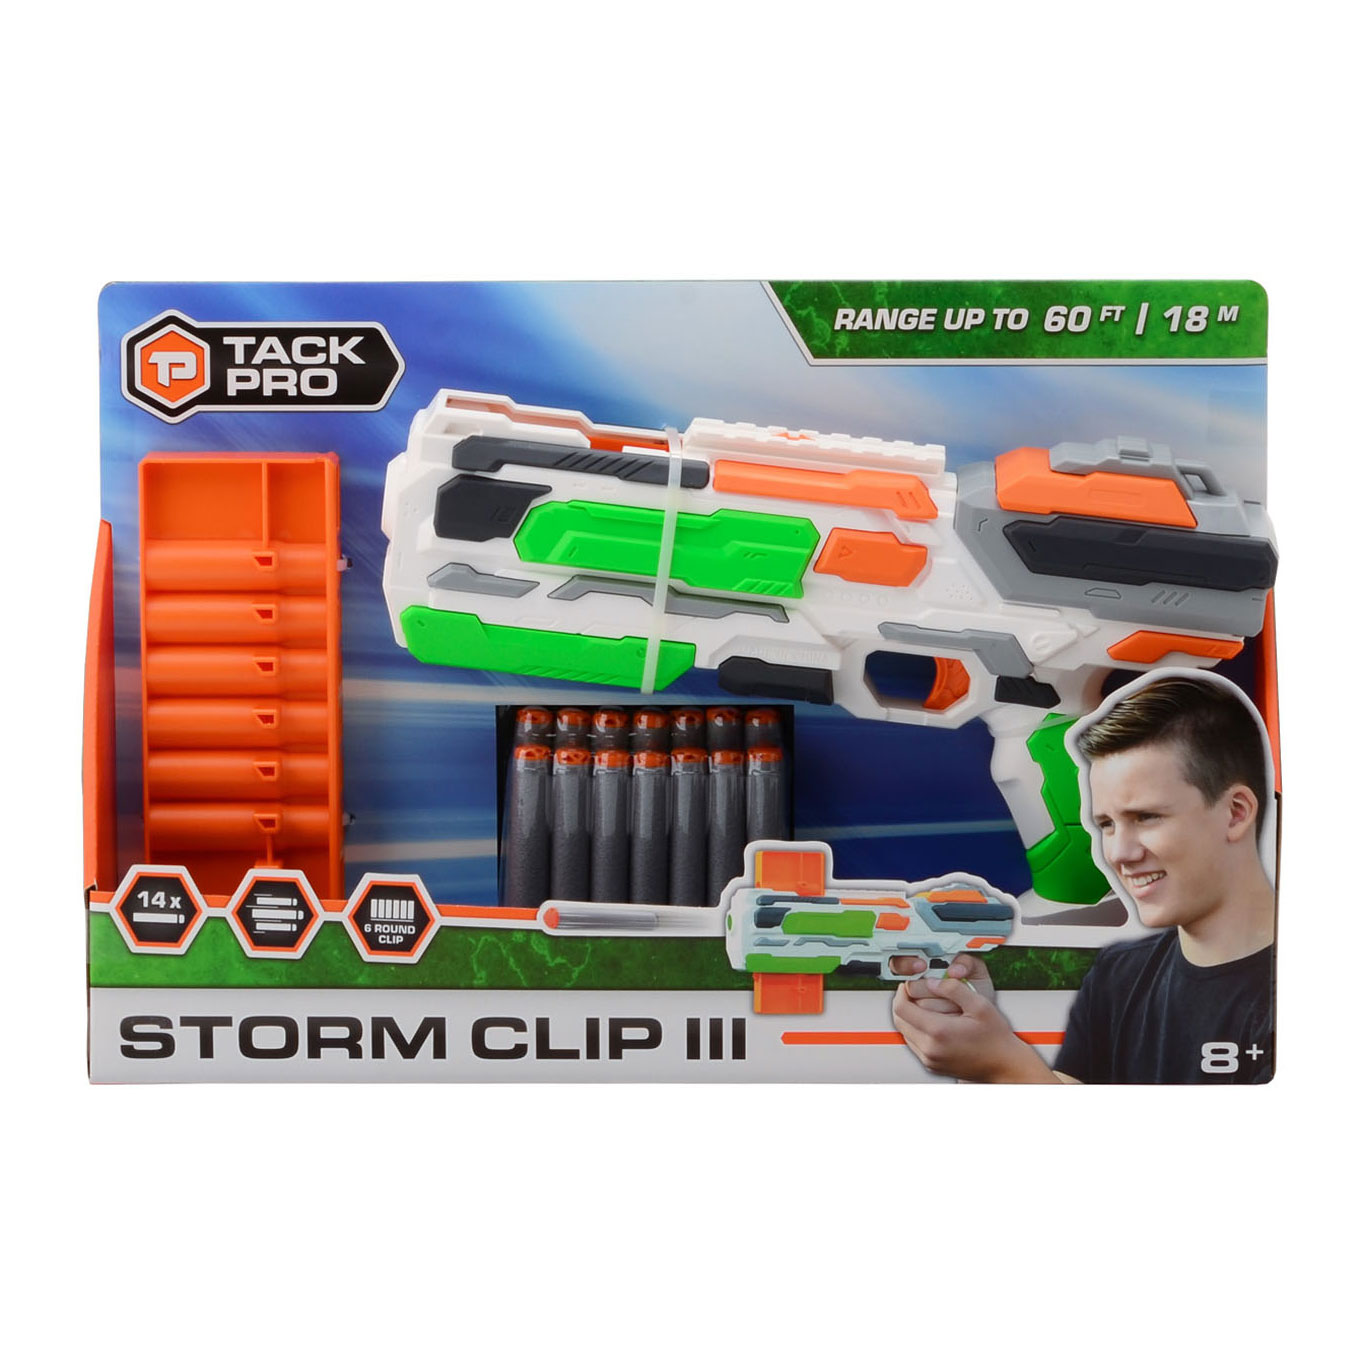 Tack Proﾩ Storm Clip III met 14 darts